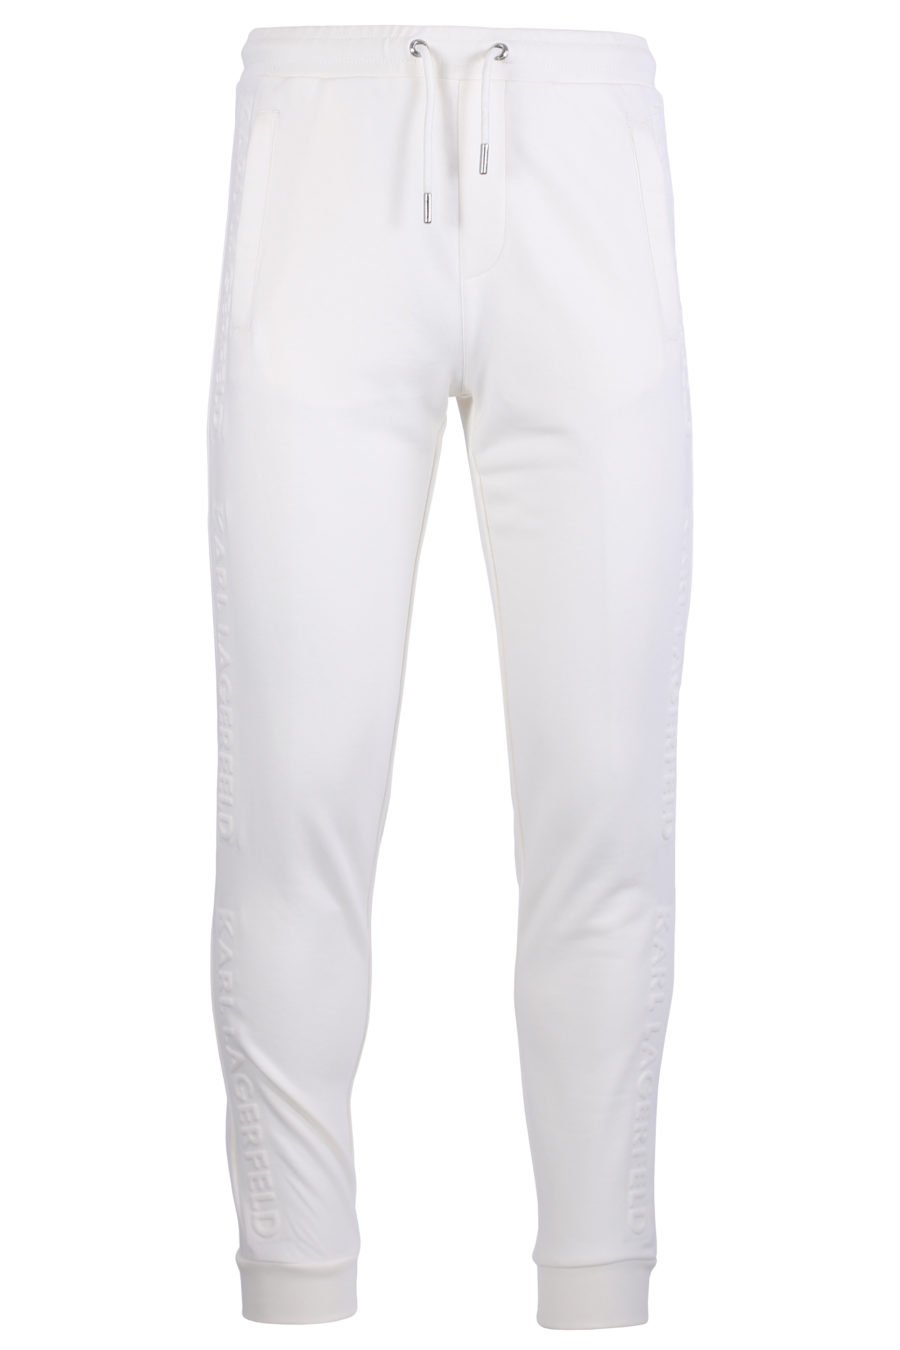 Pantalón de chándal blanco con logotipo en relieve - IMG 0618